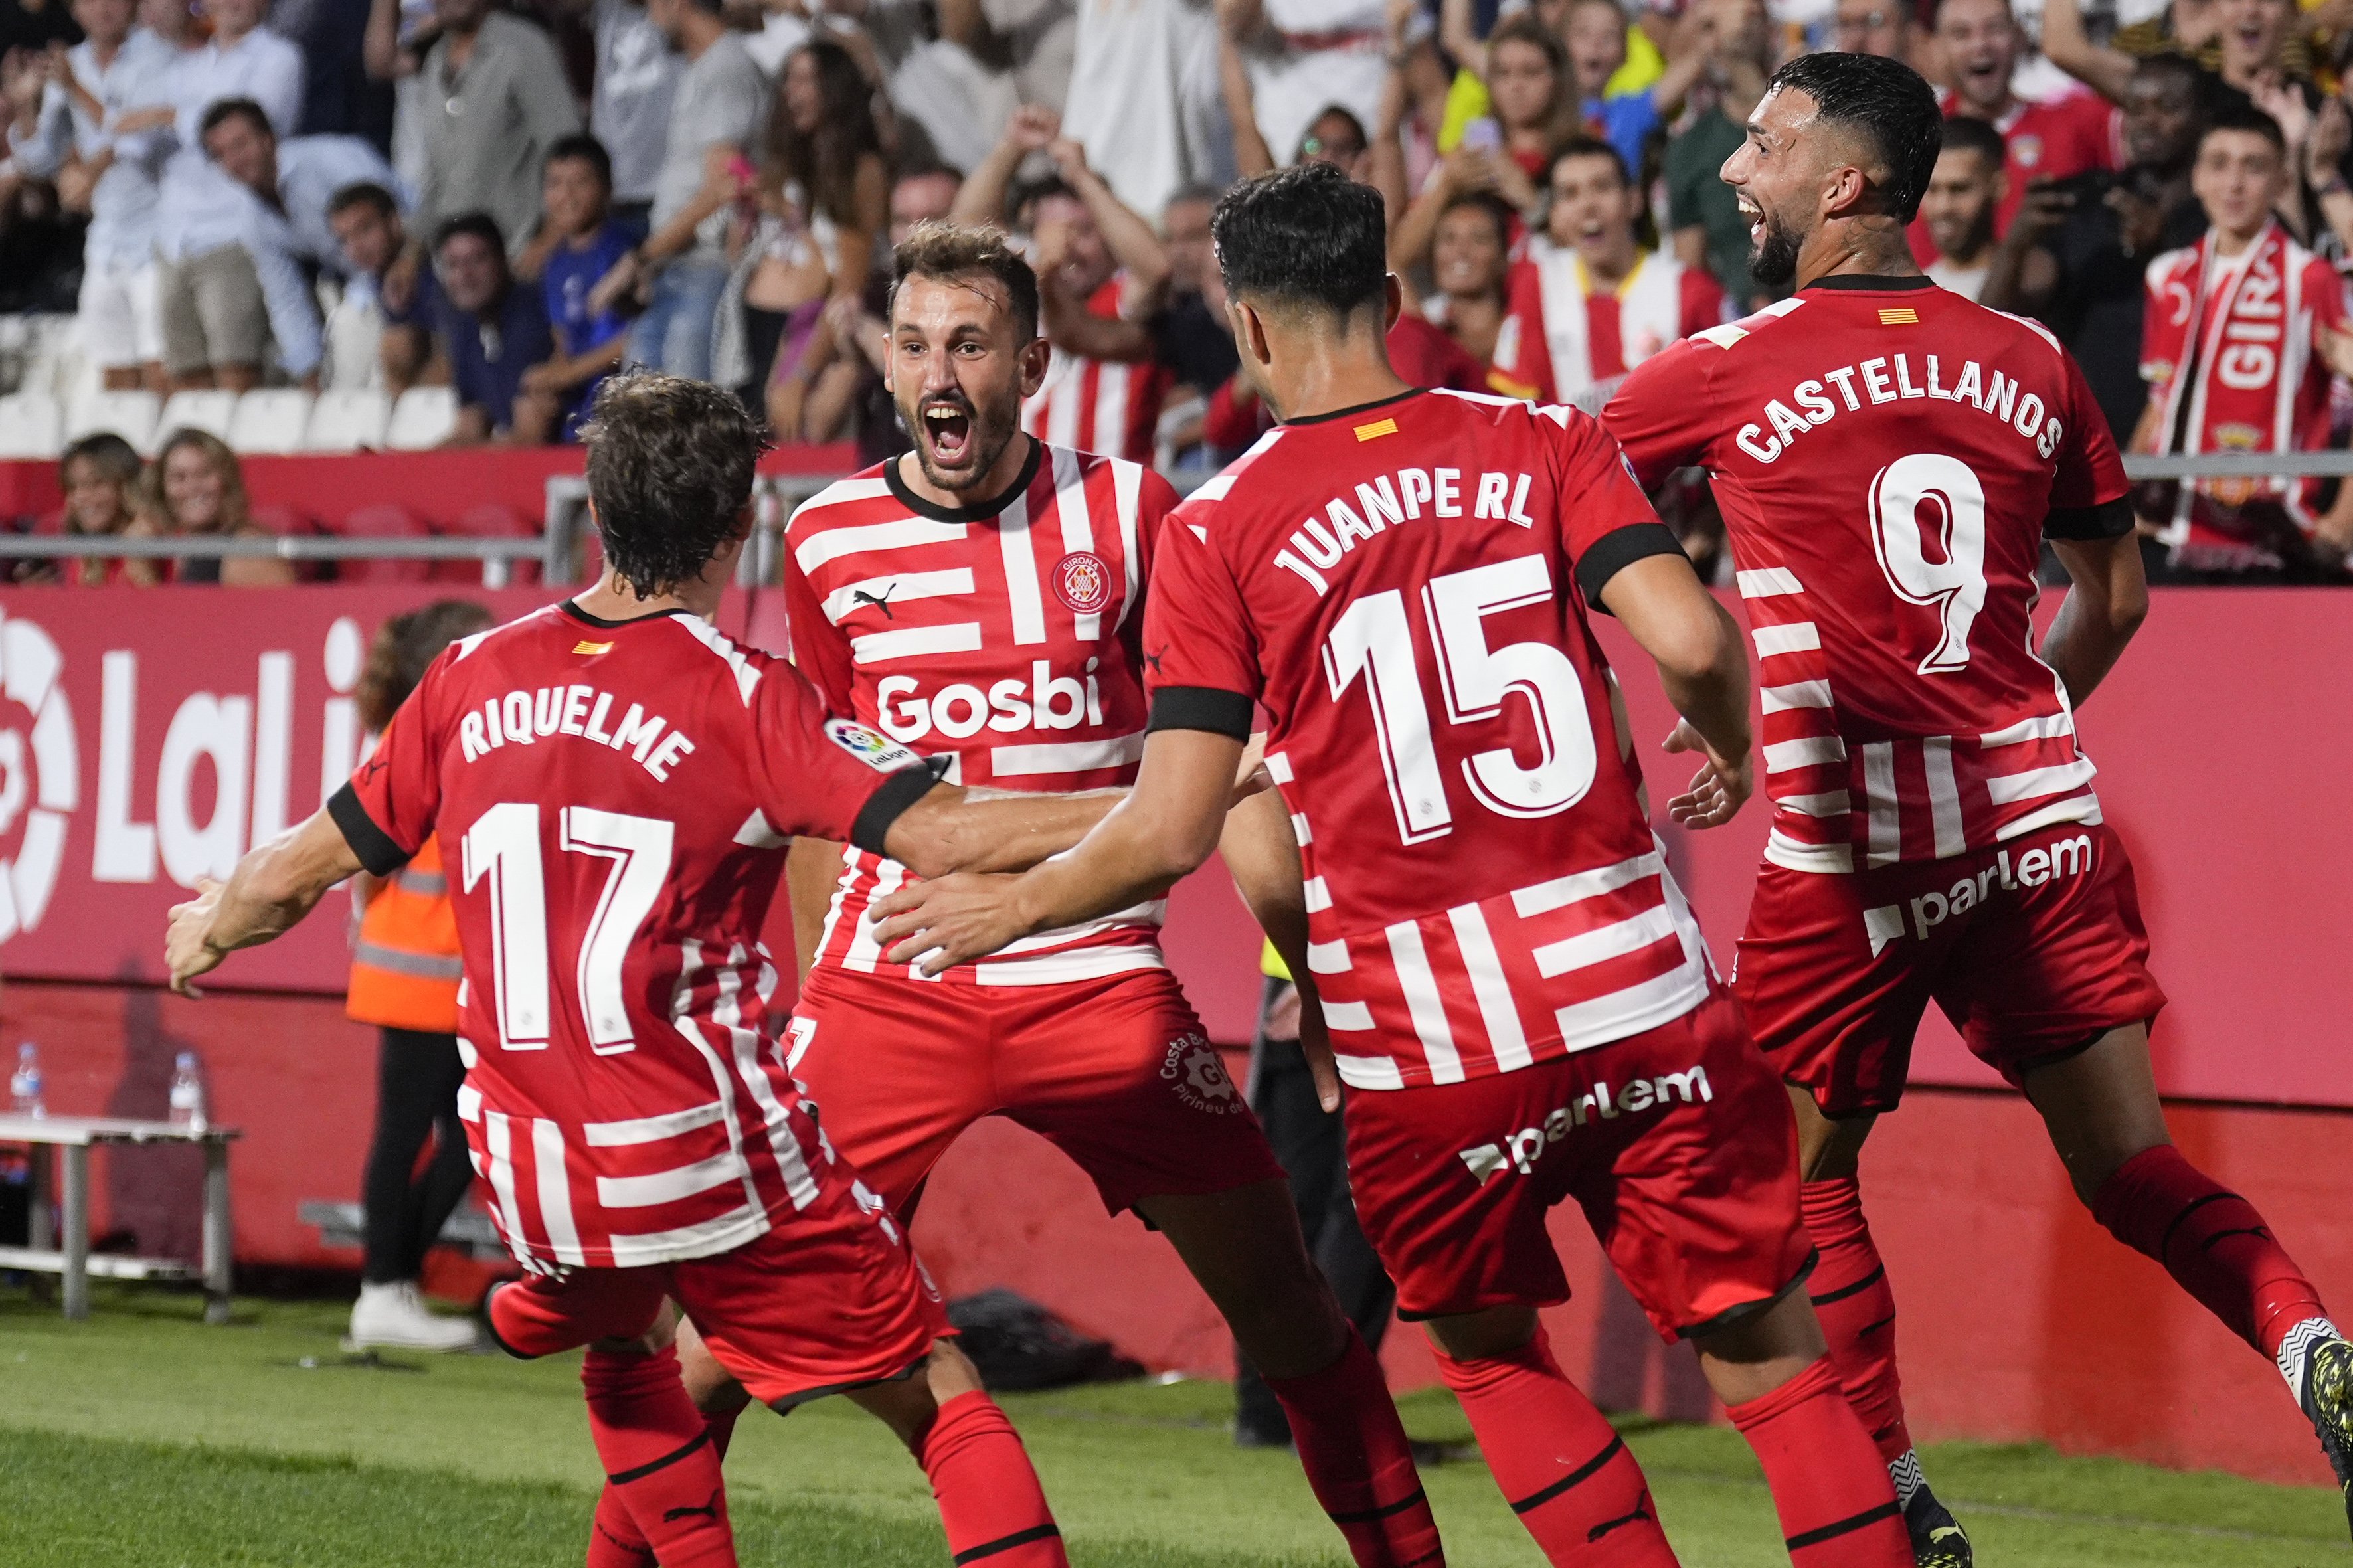 El Girona es llueix contra el Getafe en un retorn gloriós a Montilivi (3-1)